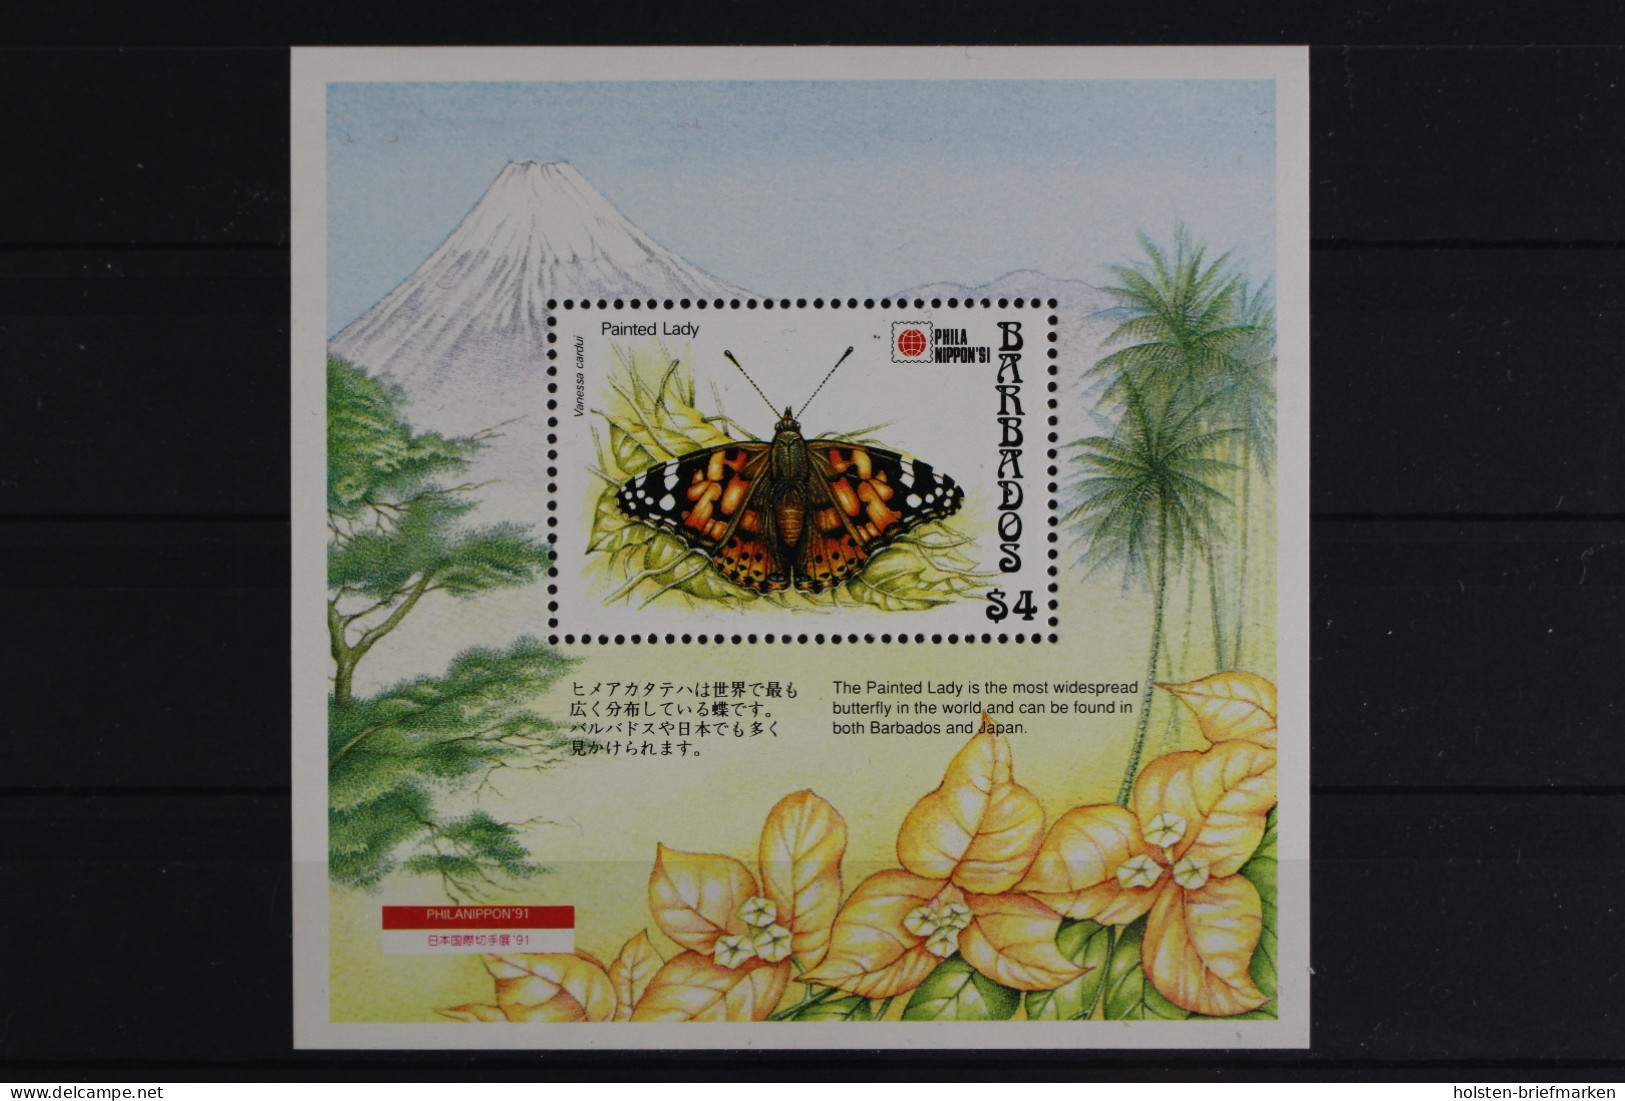 Barbados, Schmetterlinge, MiNr. Block 27, Postfrisch - Barbados (1966-...)